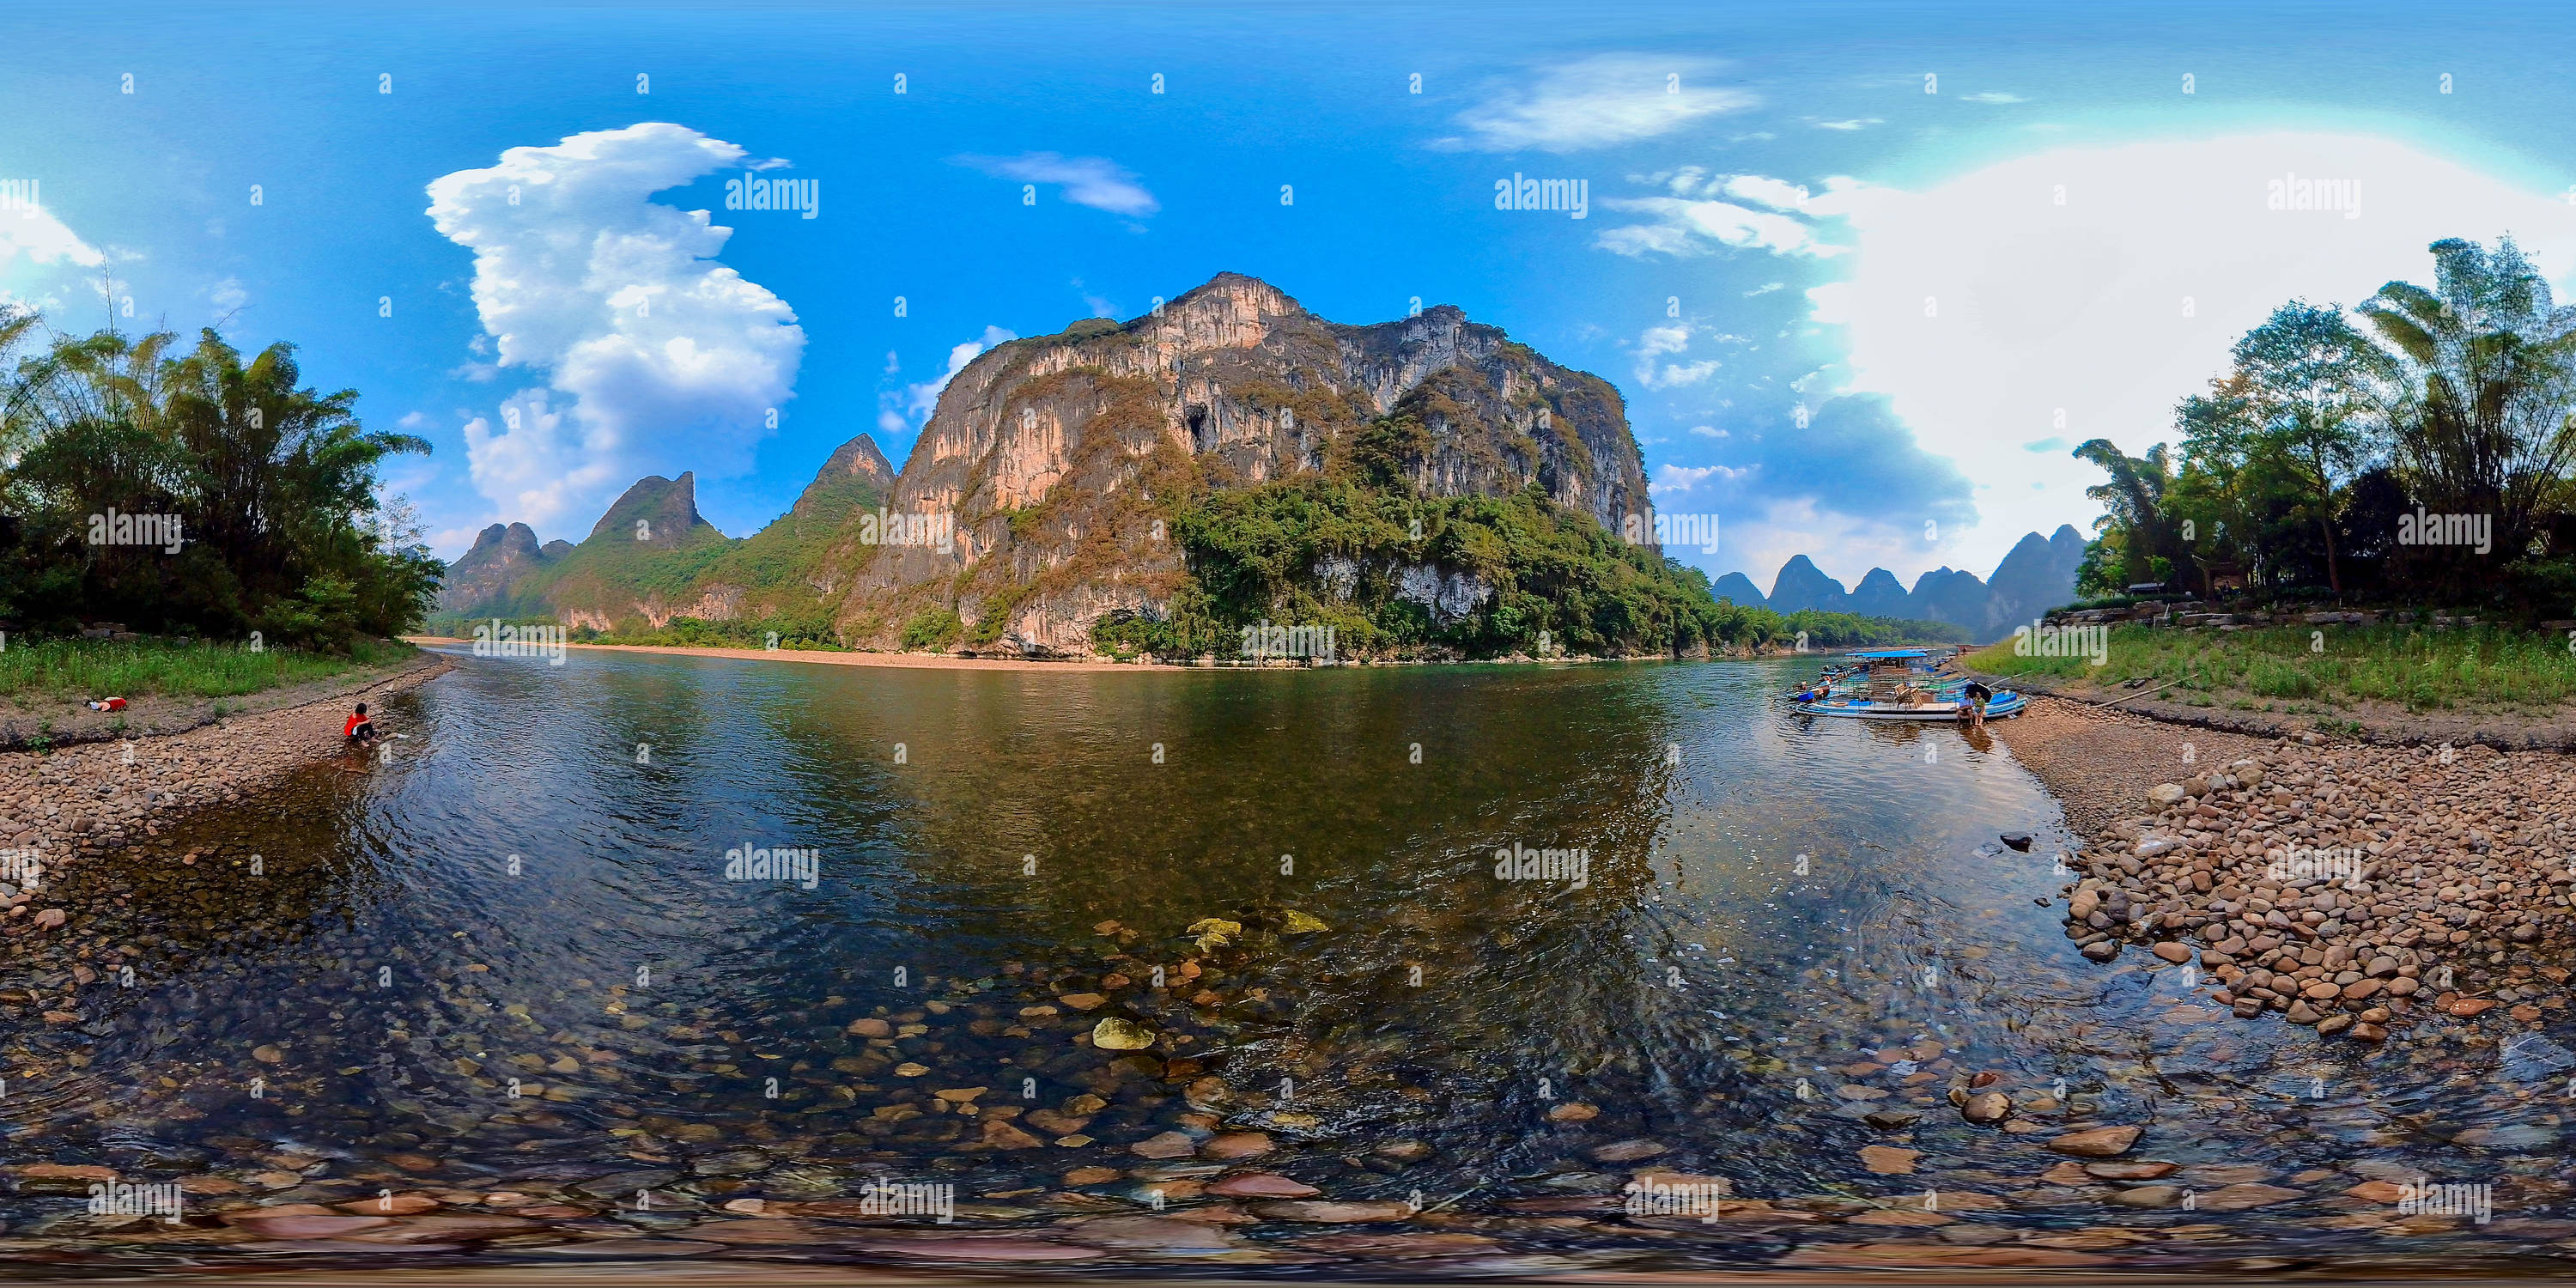 360 Grad Panorama Ansicht von Neun Pferdemalereien in Guilin 桂林九马画山